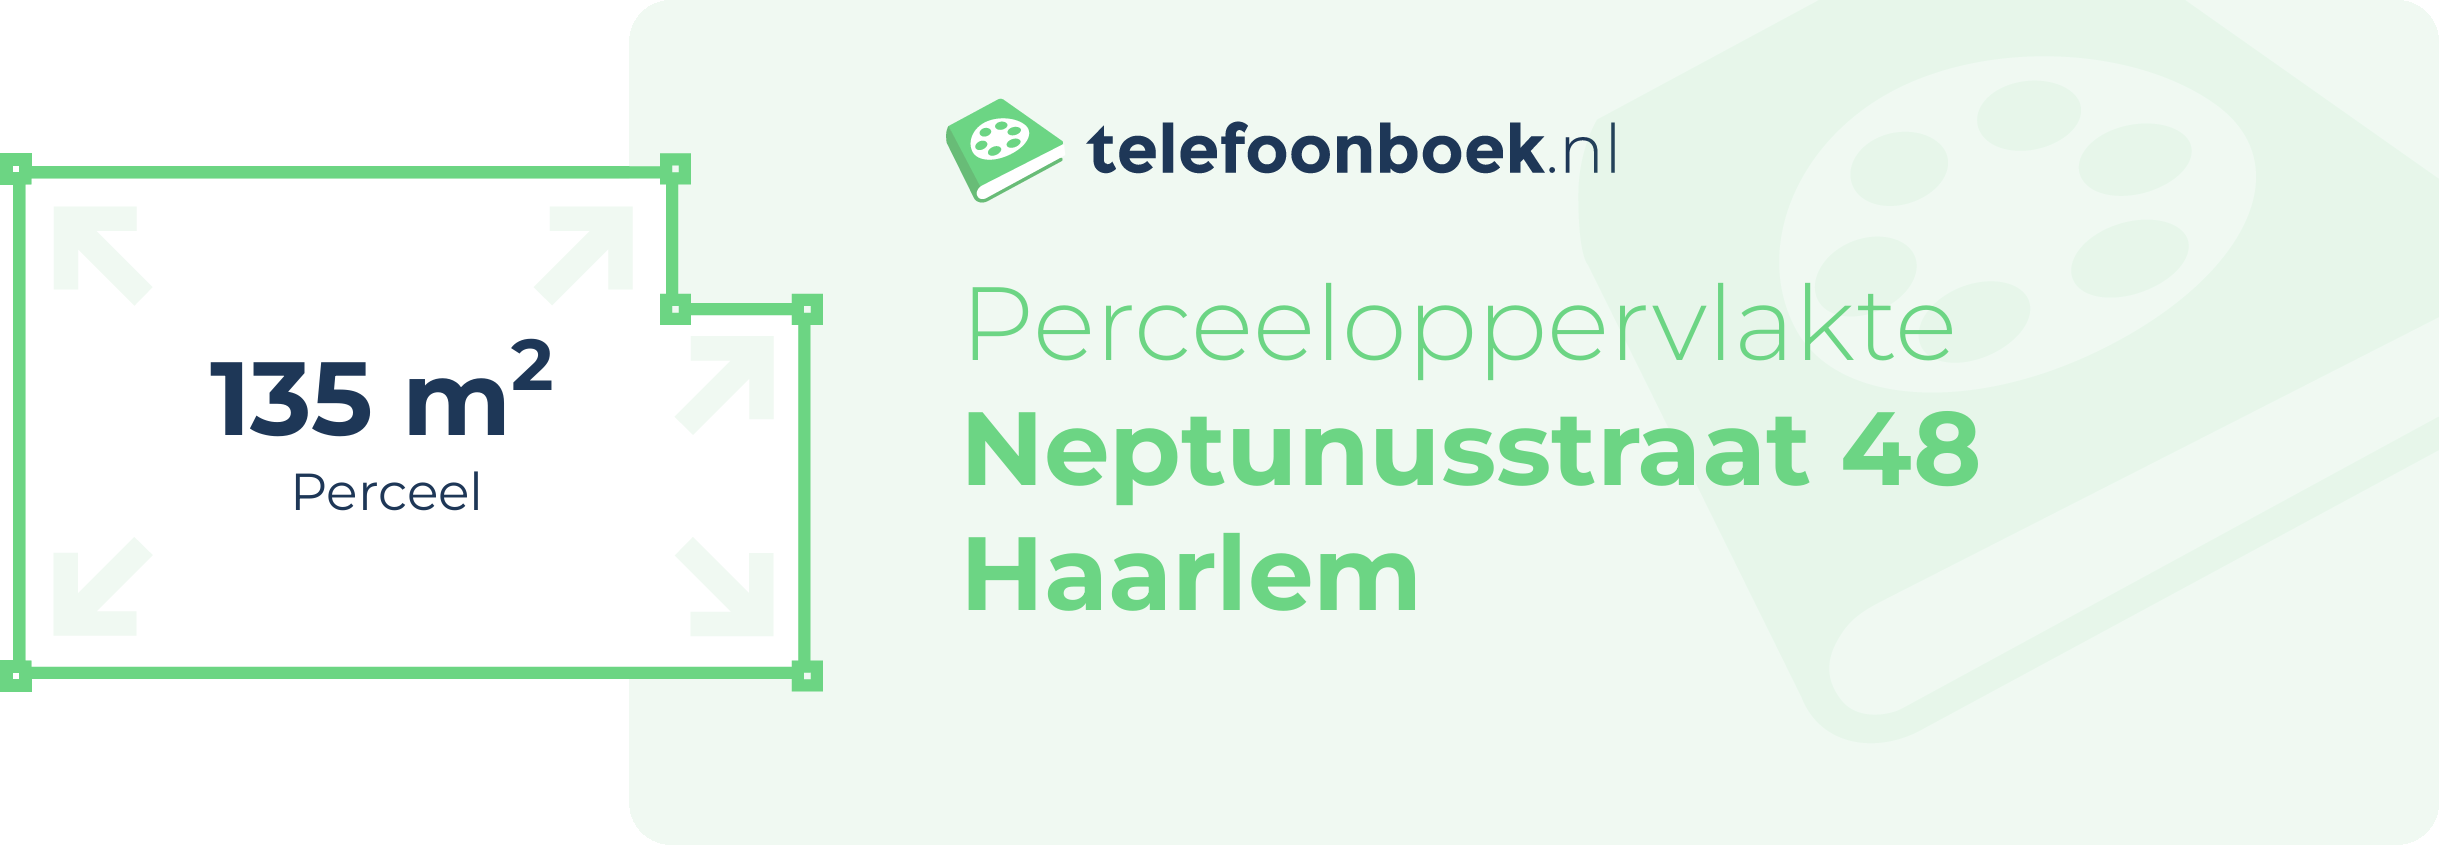 Perceeloppervlakte Neptunusstraat 48 Haarlem